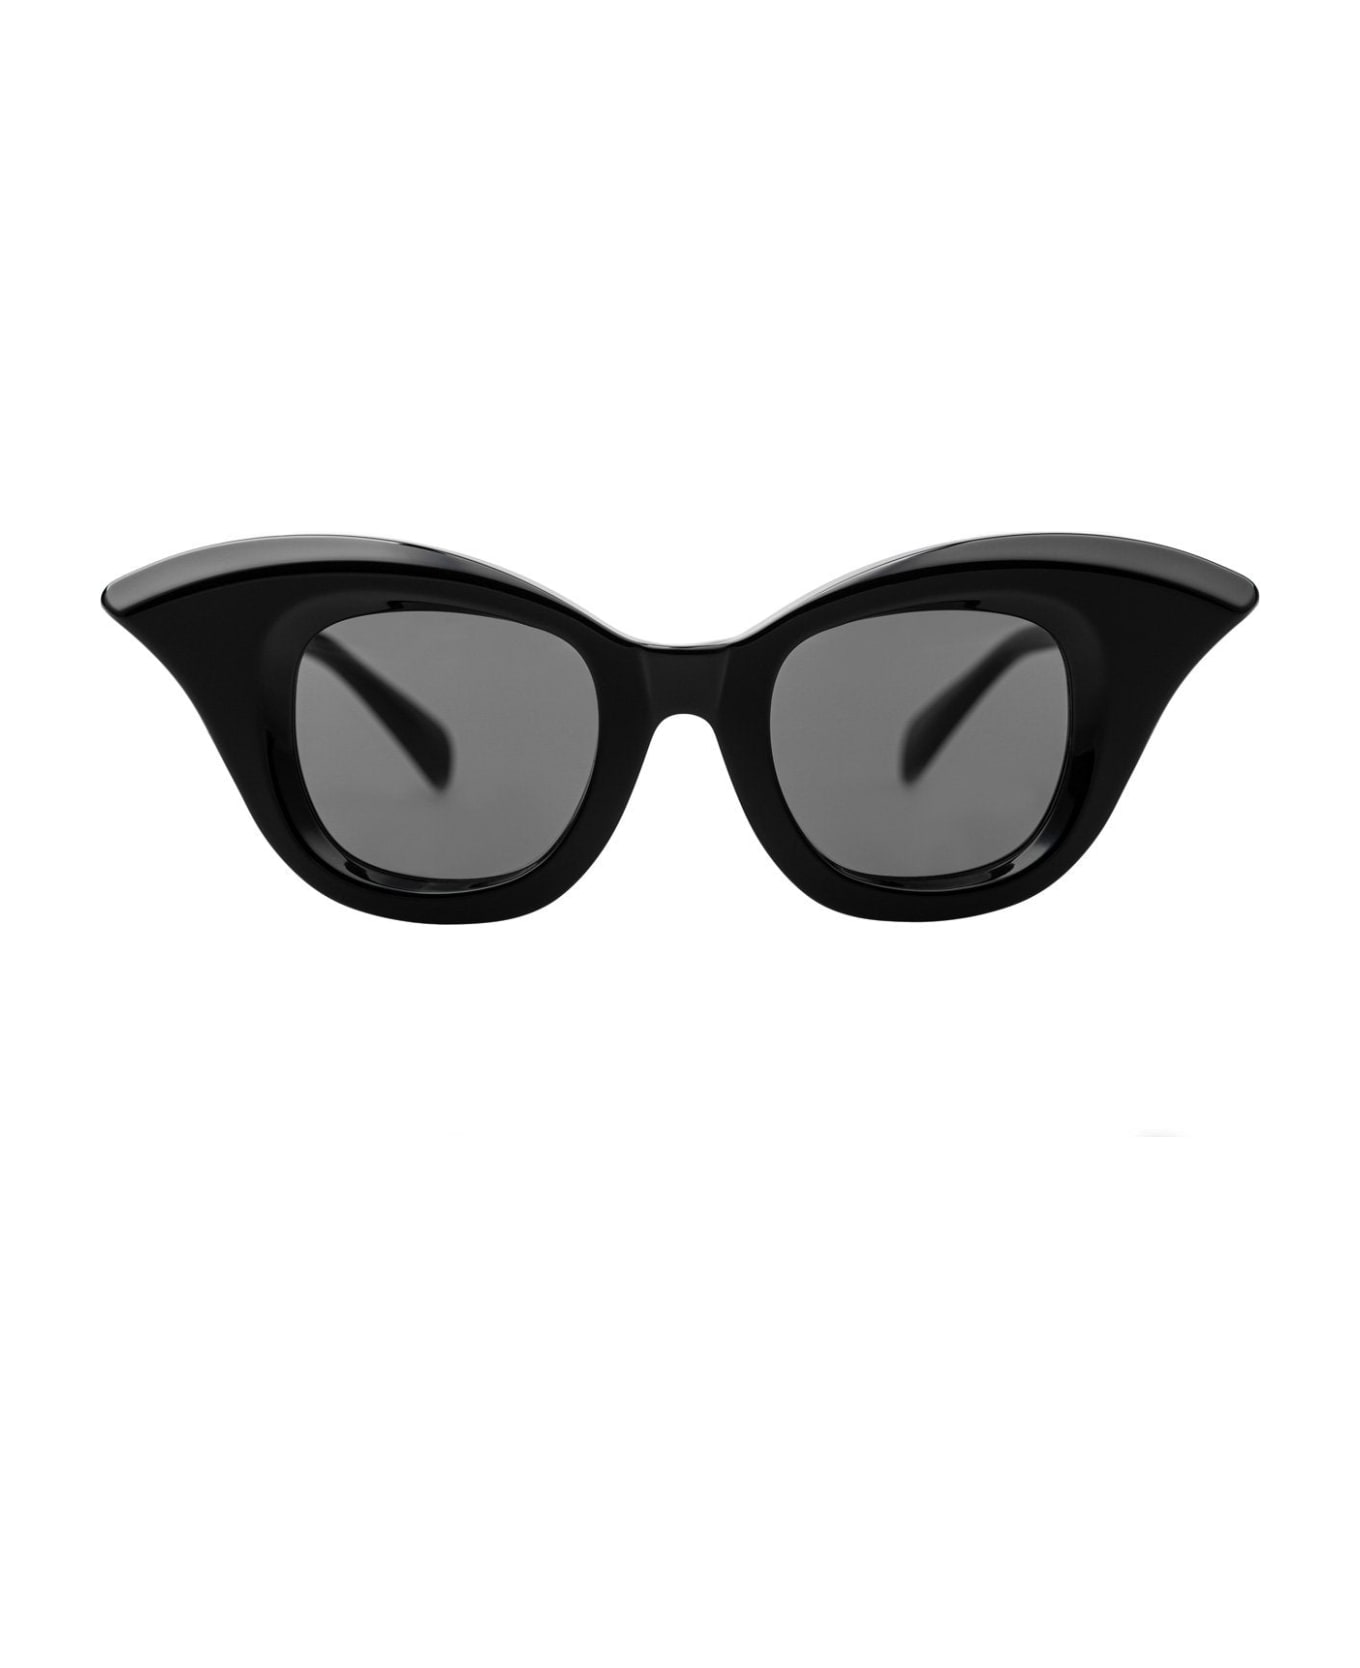 Kuboraum Maske B20-bs Sunglasses Sunglasses - Black Shine 